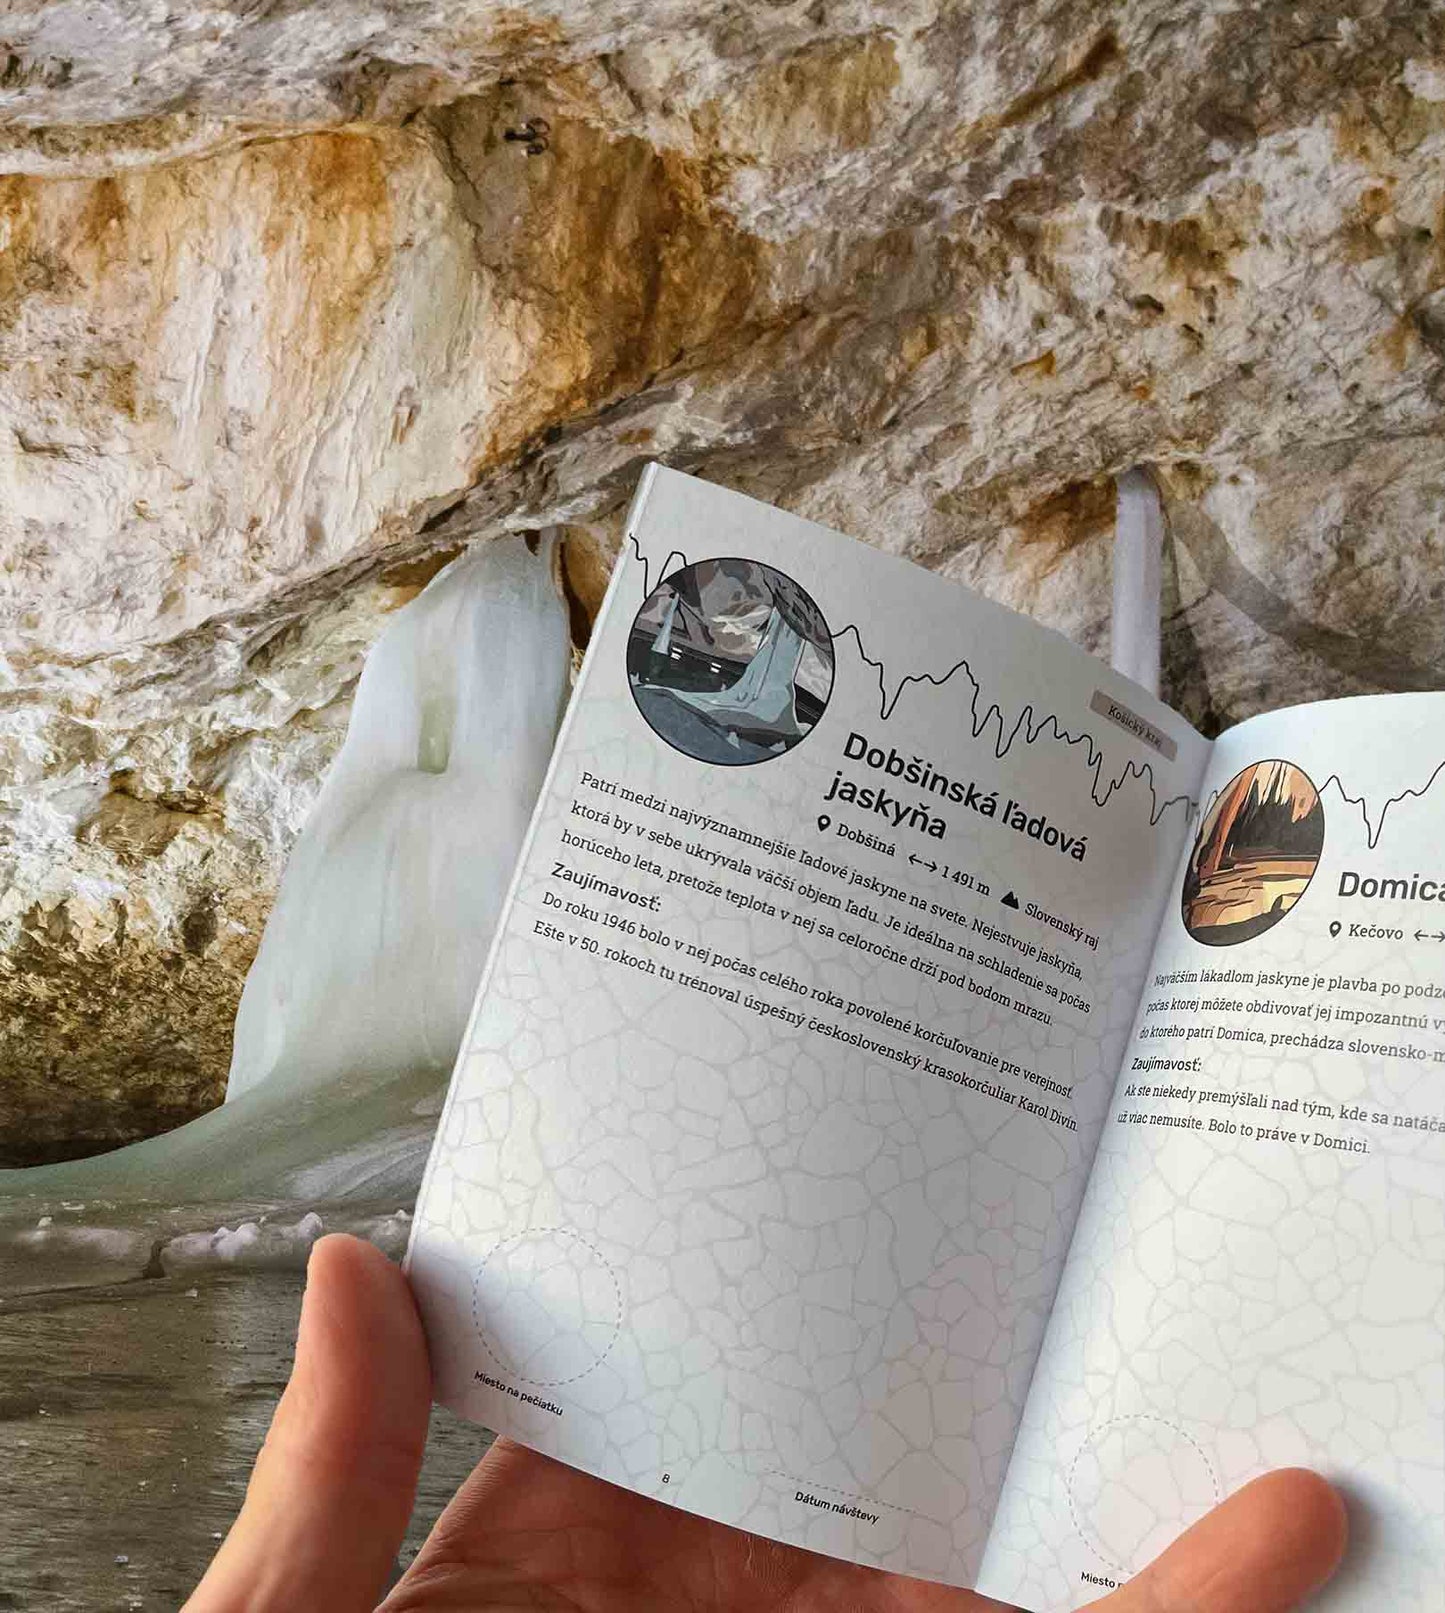 Jaskynný pas